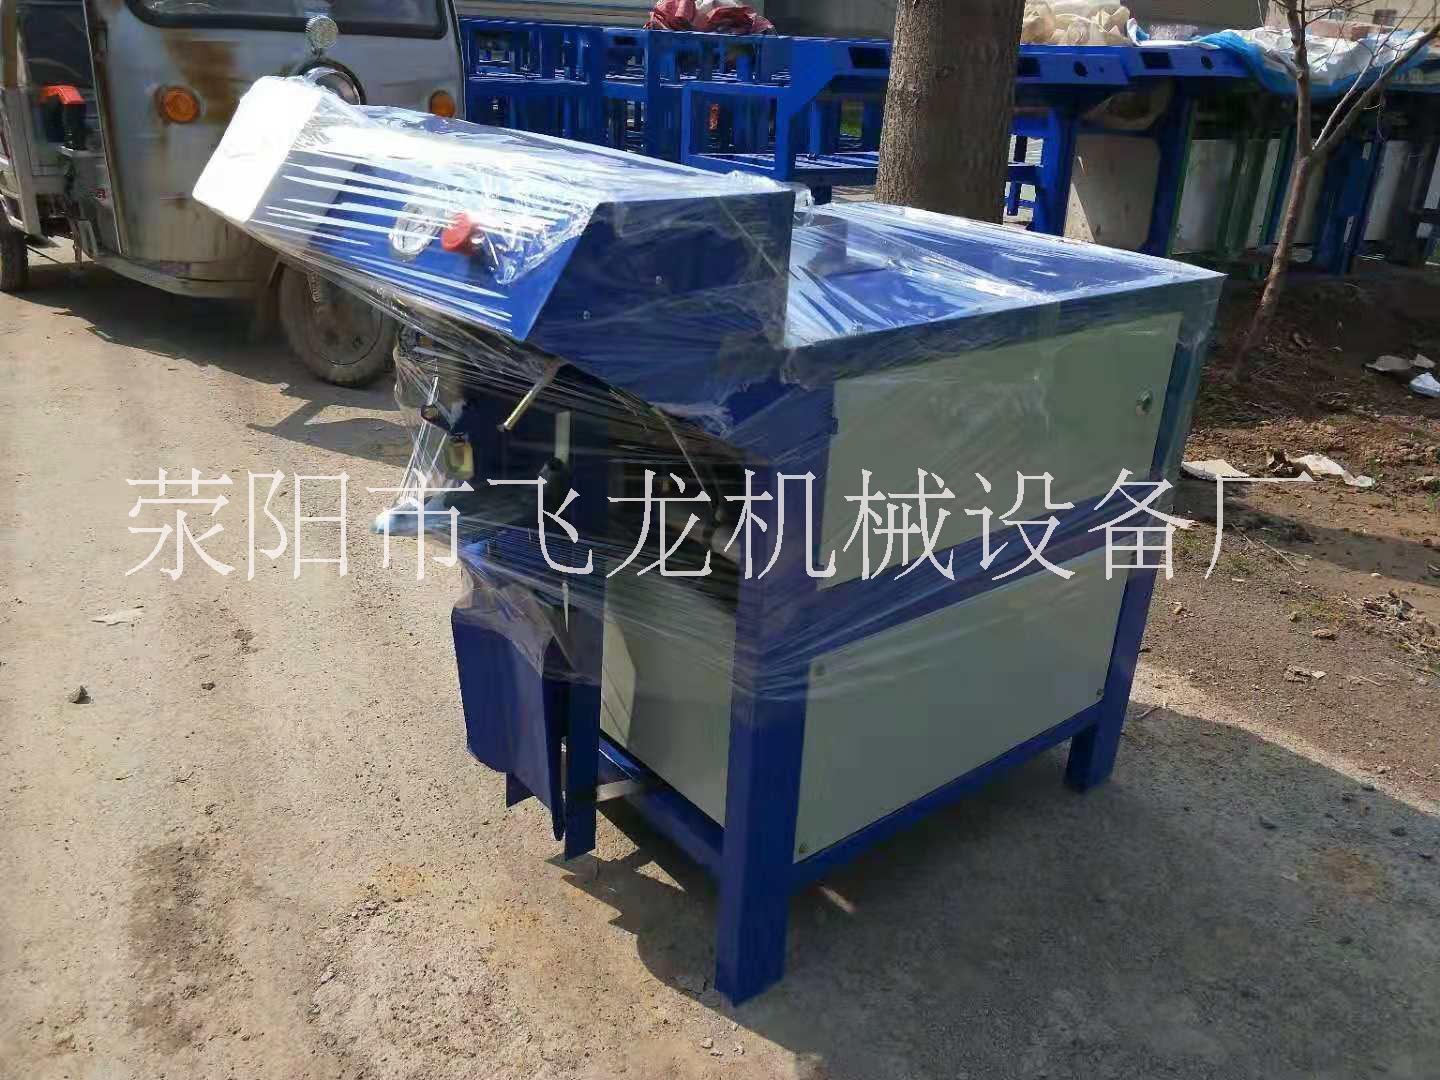 郑州市飞龙定制阀口自动计量包装机厂家飞龙定制阀口自动计量包装机